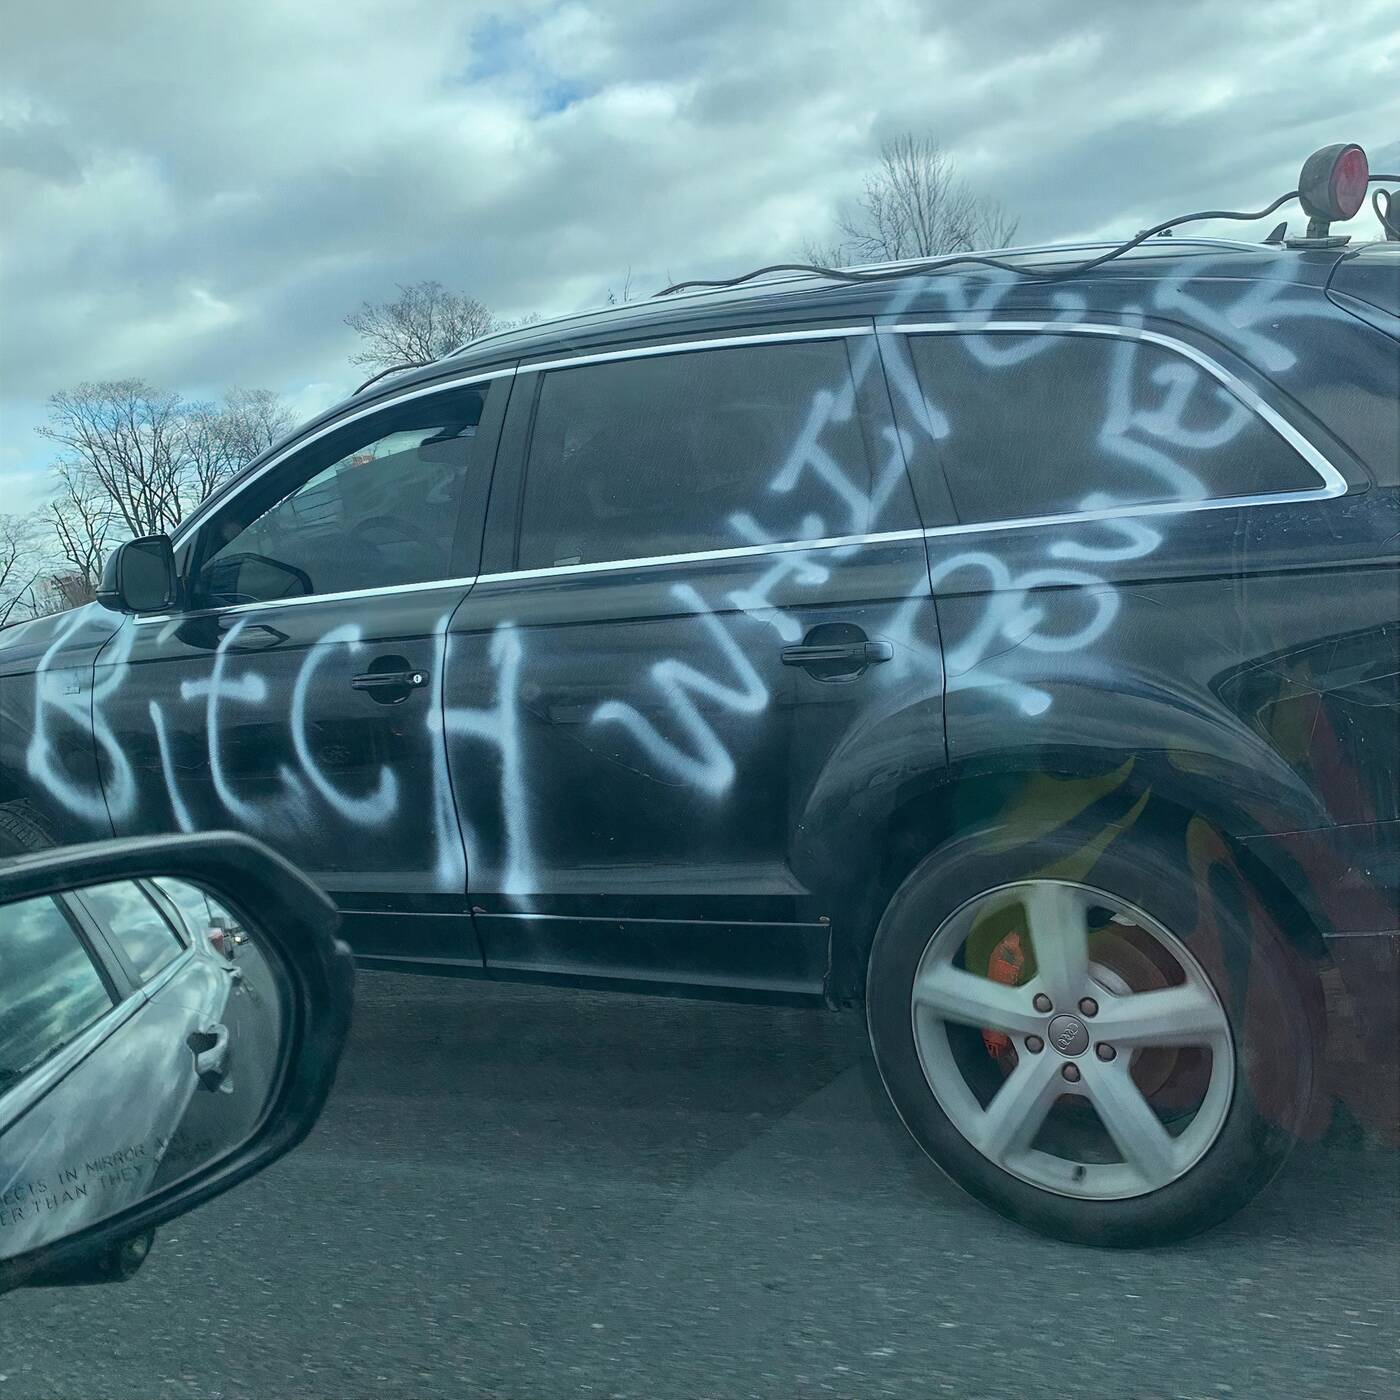 racist graffiti 401